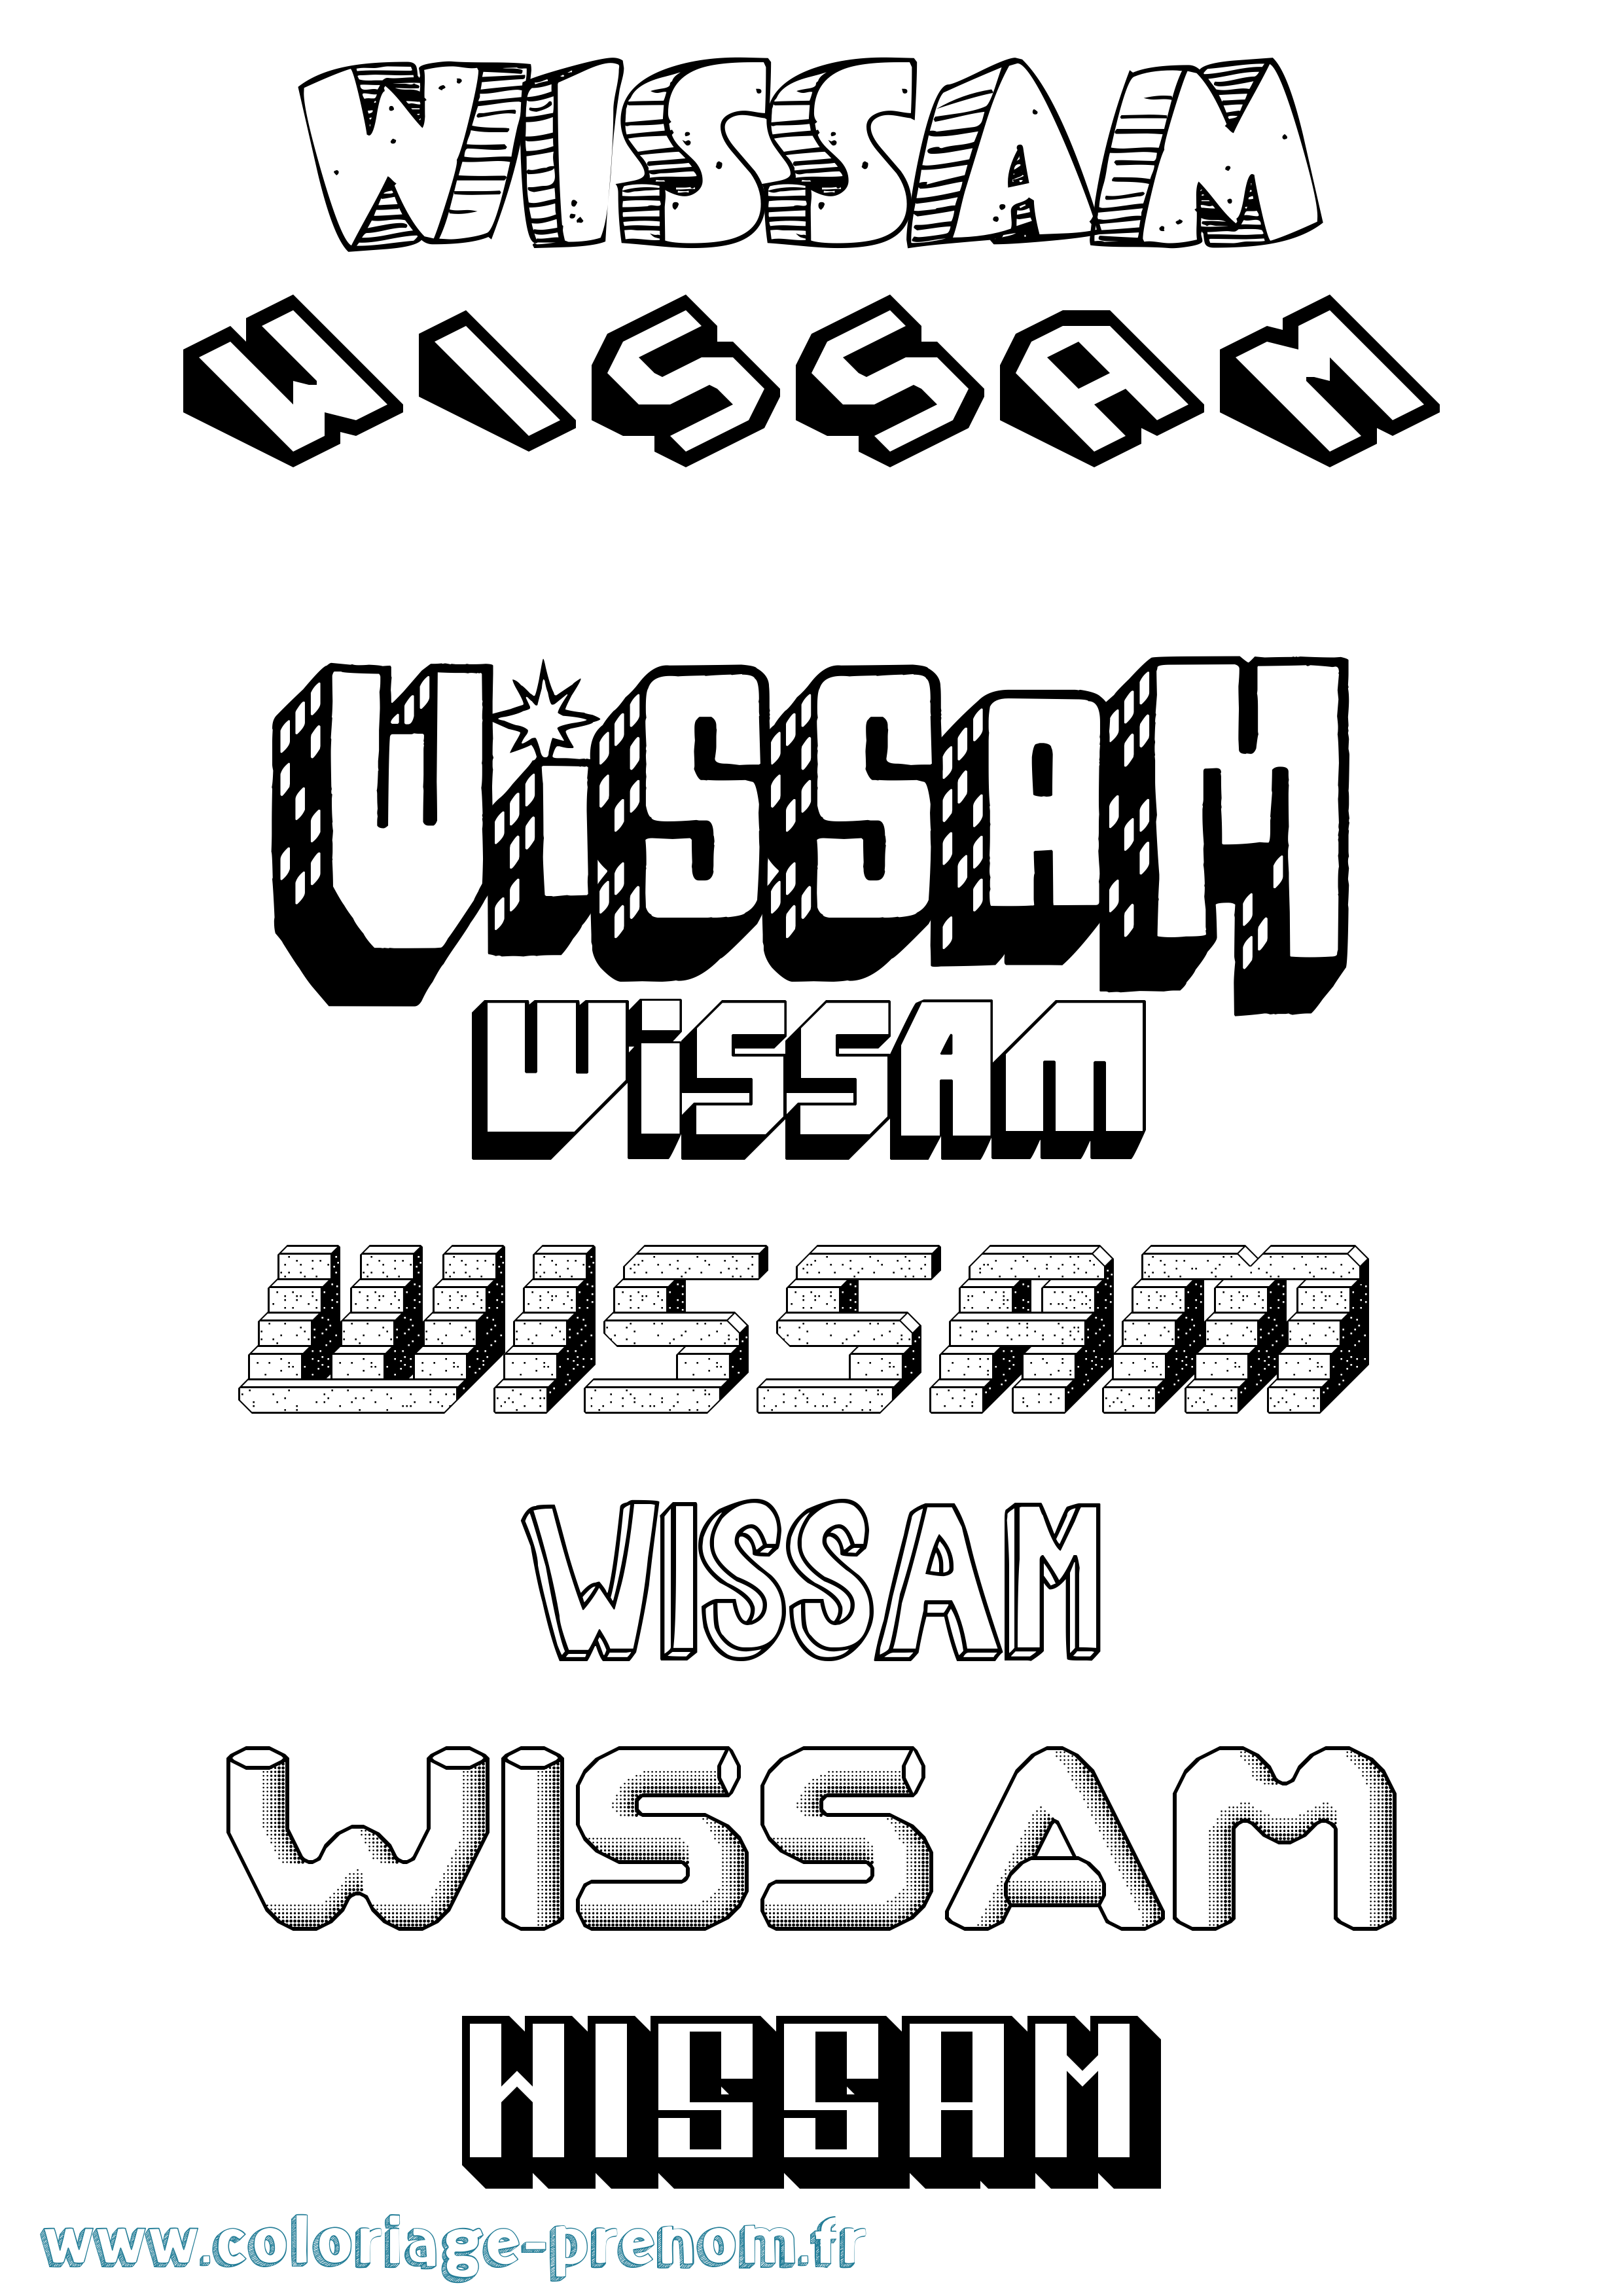 Coloriage prénom Wissam